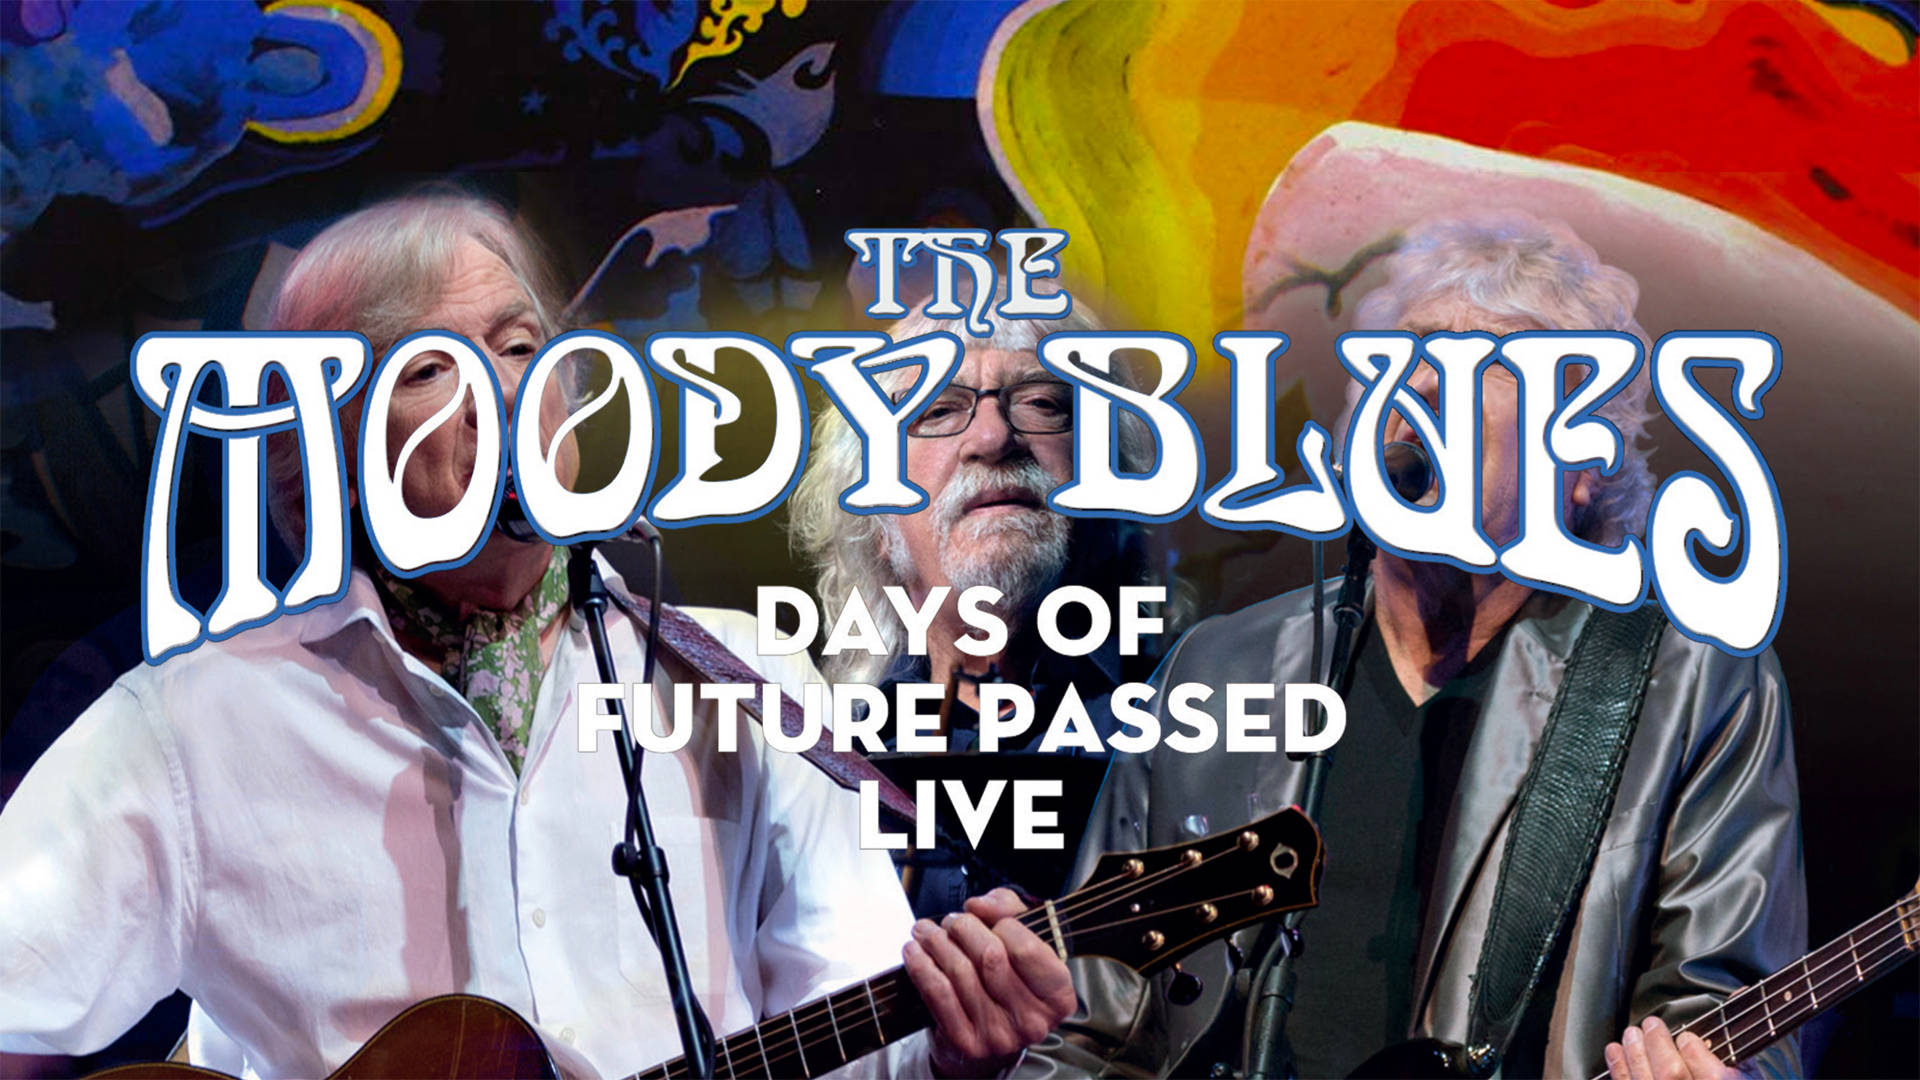 Elfilm En Vivo De Los Moody Blues, Days Of Future Passed. Fondo de pantalla